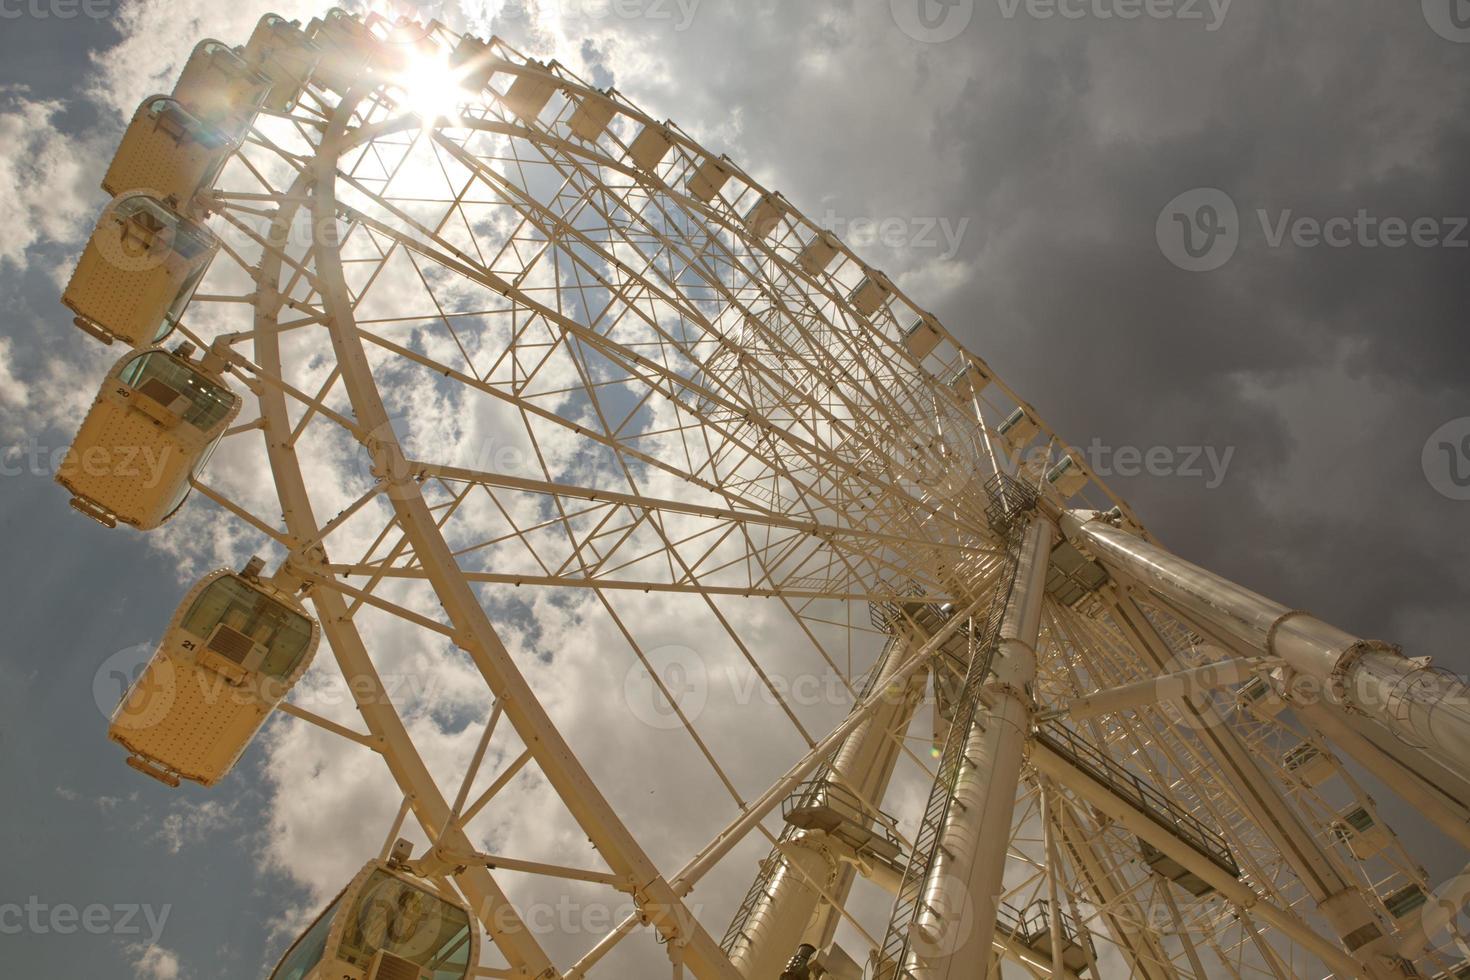 pariserhjul över molnig himmel foto